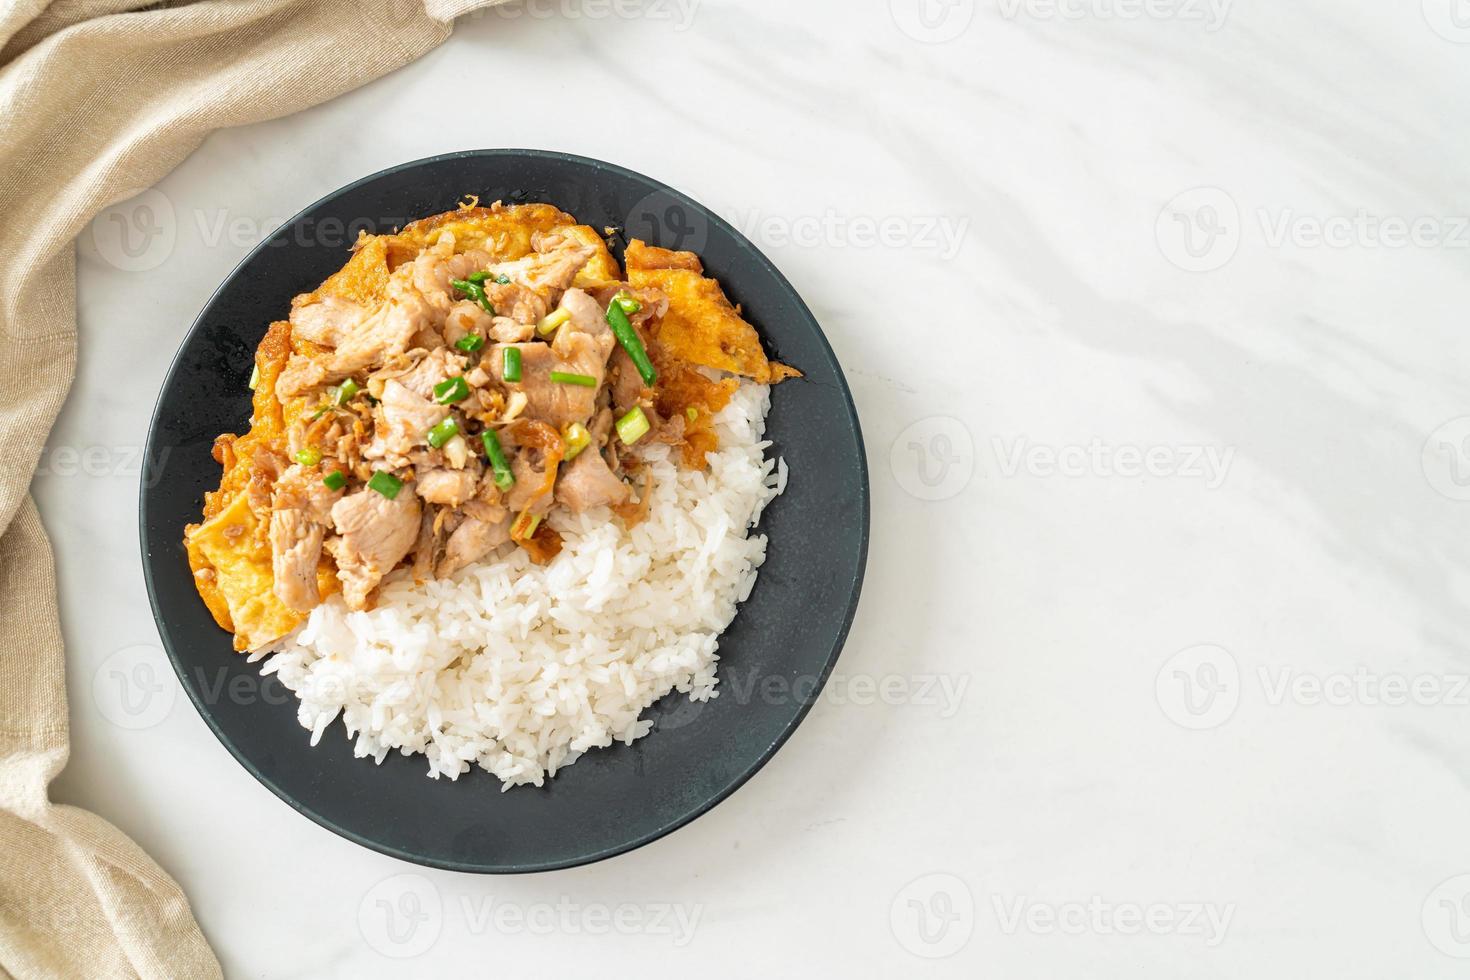 uppstekt fläsk med vitlök och ägg toppat på ris - asiatisk matstil foto